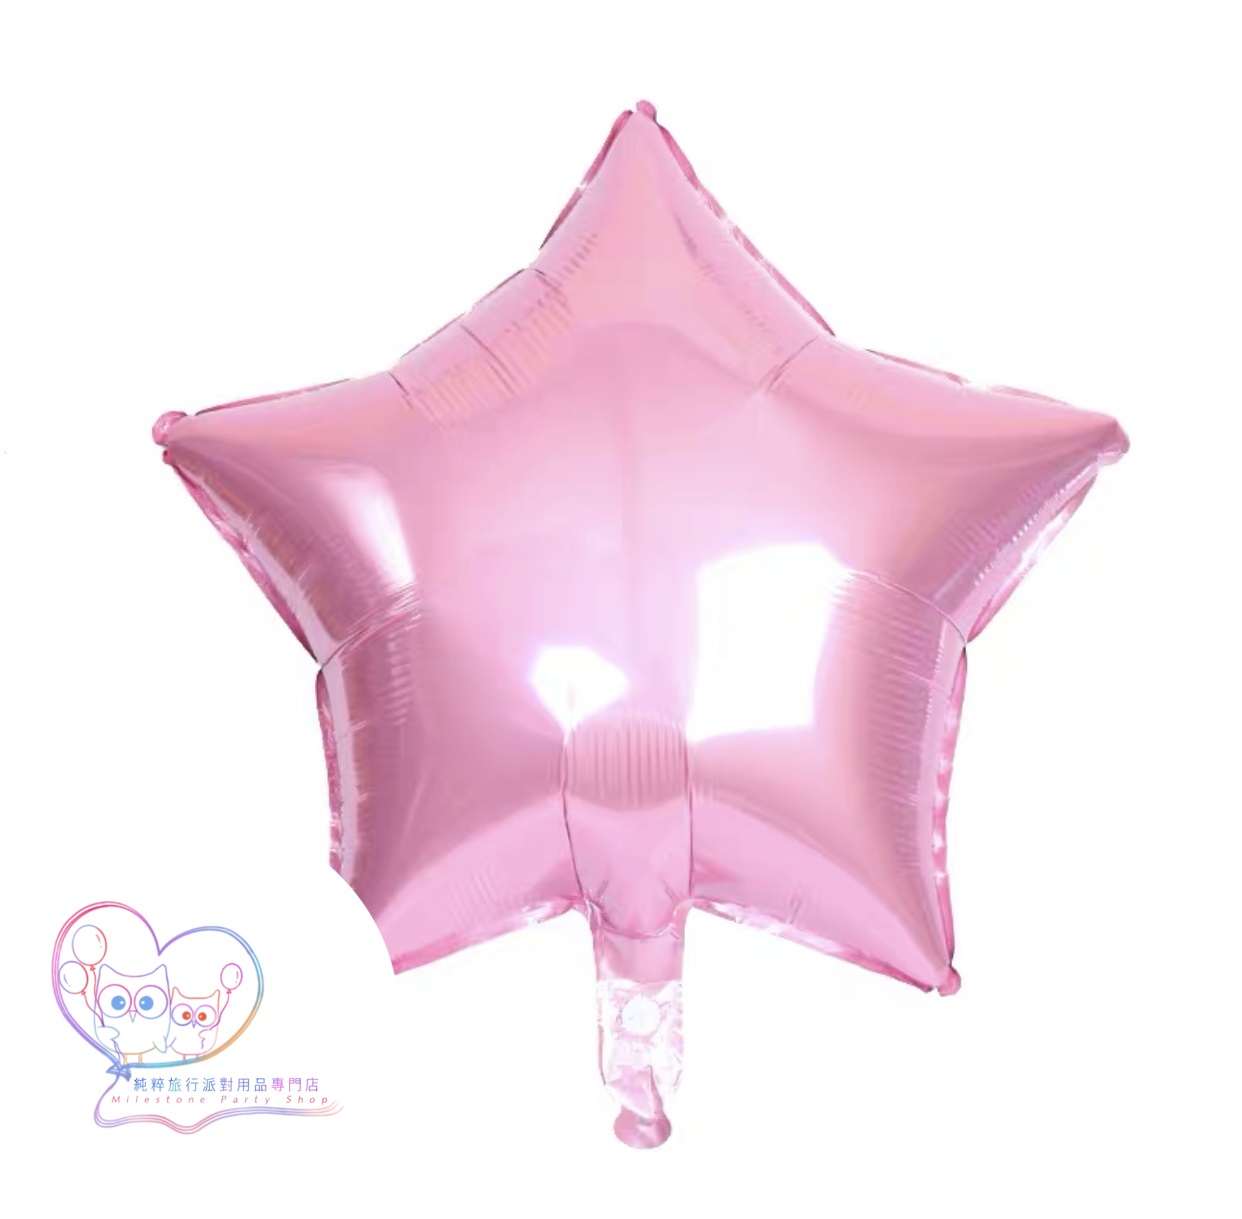 18吋星星鋁膜氣球 (粉紅色) 18S6